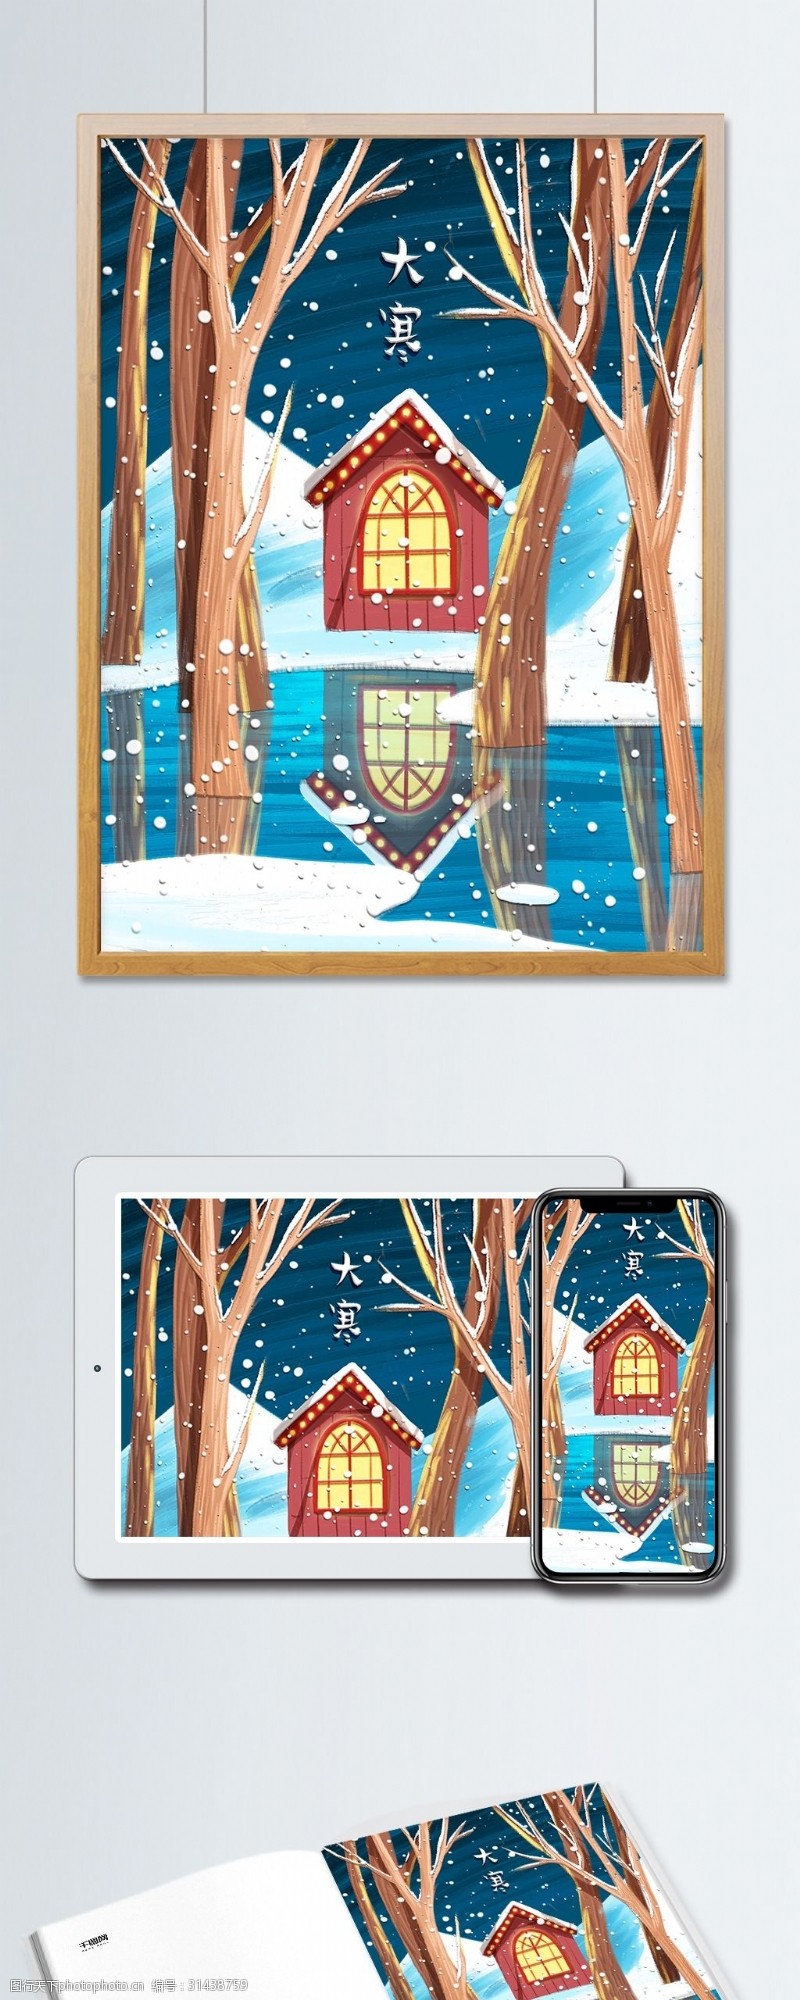 冬天里的房子大寒仿油画插画冬夜树林里的小屋